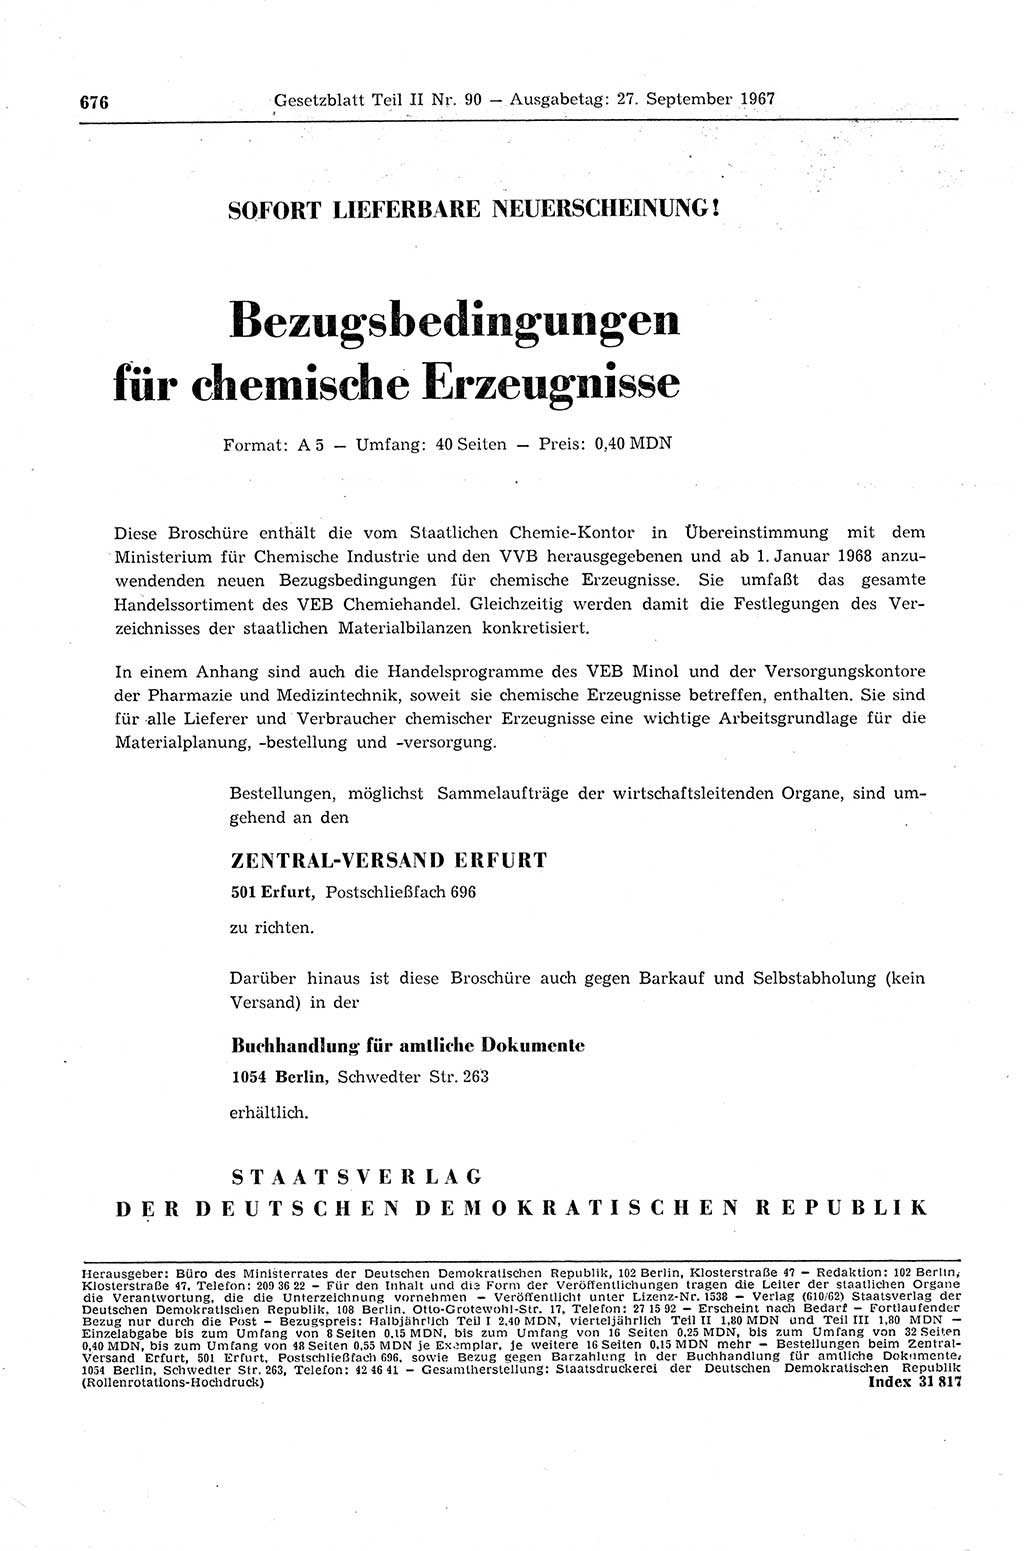 Gesetzblatt (GBl.) der Deutschen Demokratischen Republik (DDR) Teil ⅠⅠ 1967, Seite 676 (GBl. DDR ⅠⅠ 1967, S. 676)